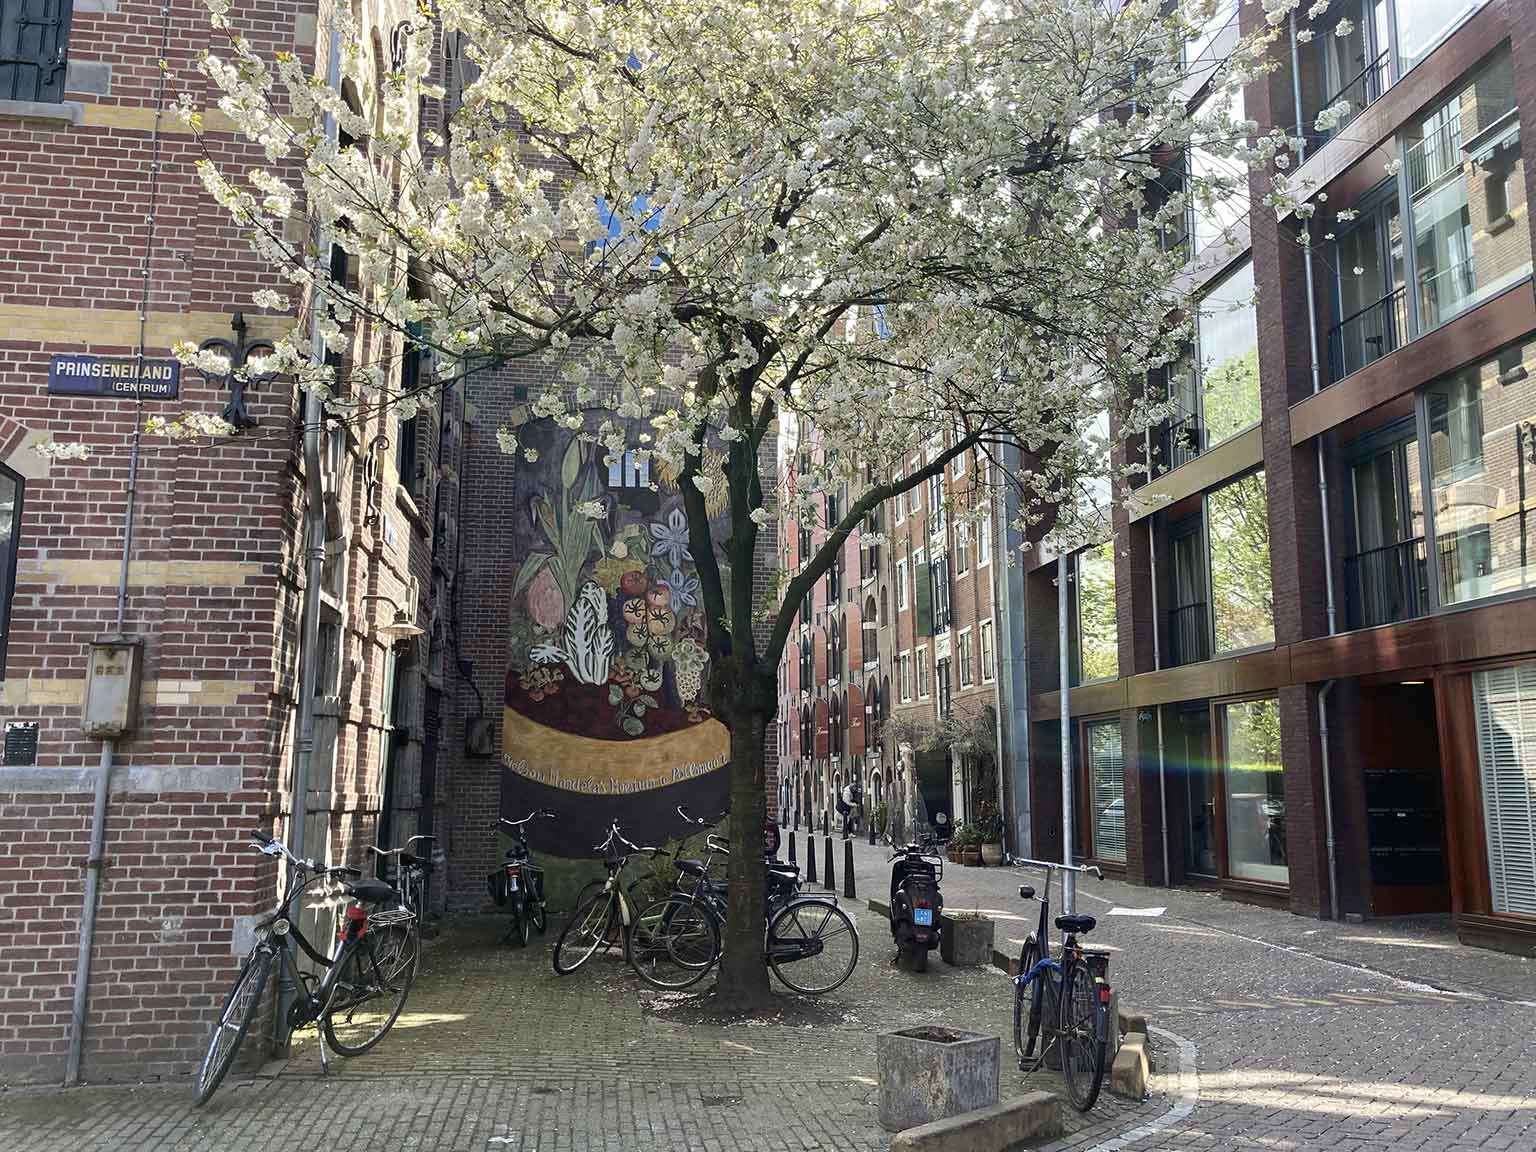 Prinseneiland, Amsterdam, muuurschildering van Nelson Mandela’s moestuin in Pollsmoor